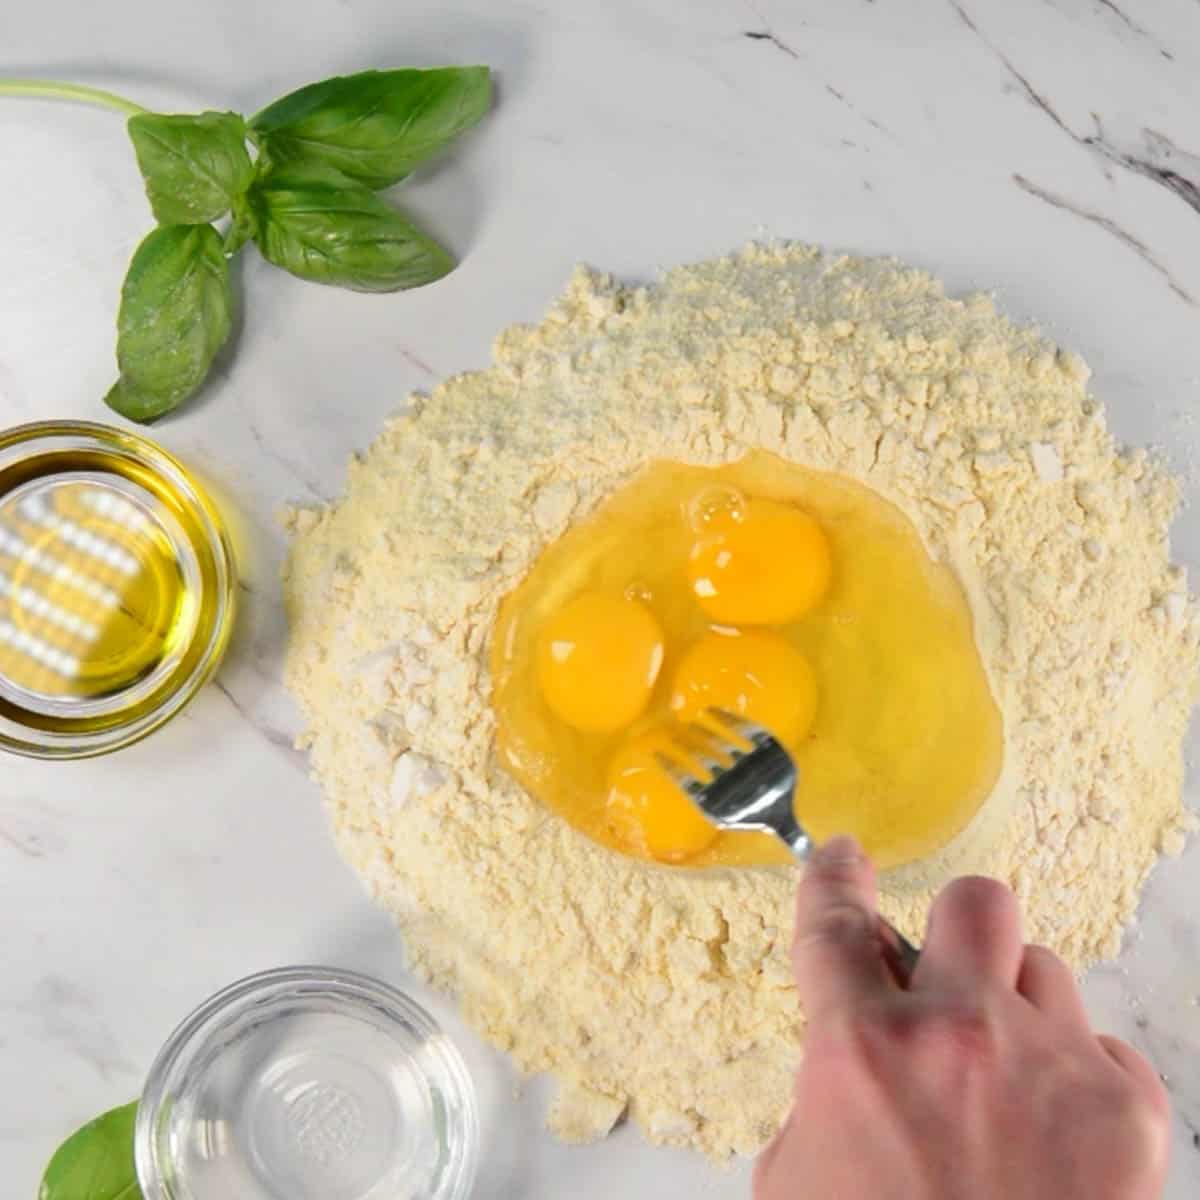 adding eggs to flour mixture for homemade pasta recipe.